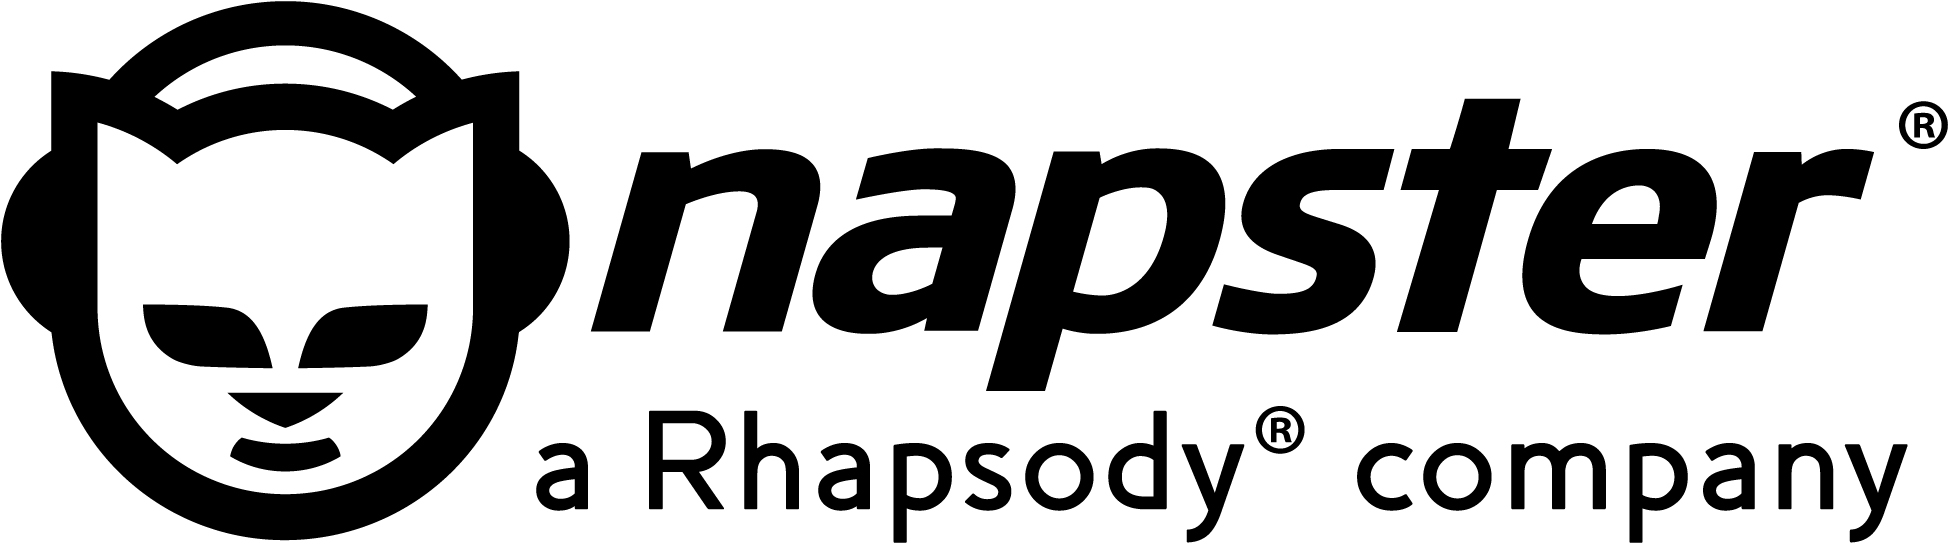 Store Update: Rhapsody is Now